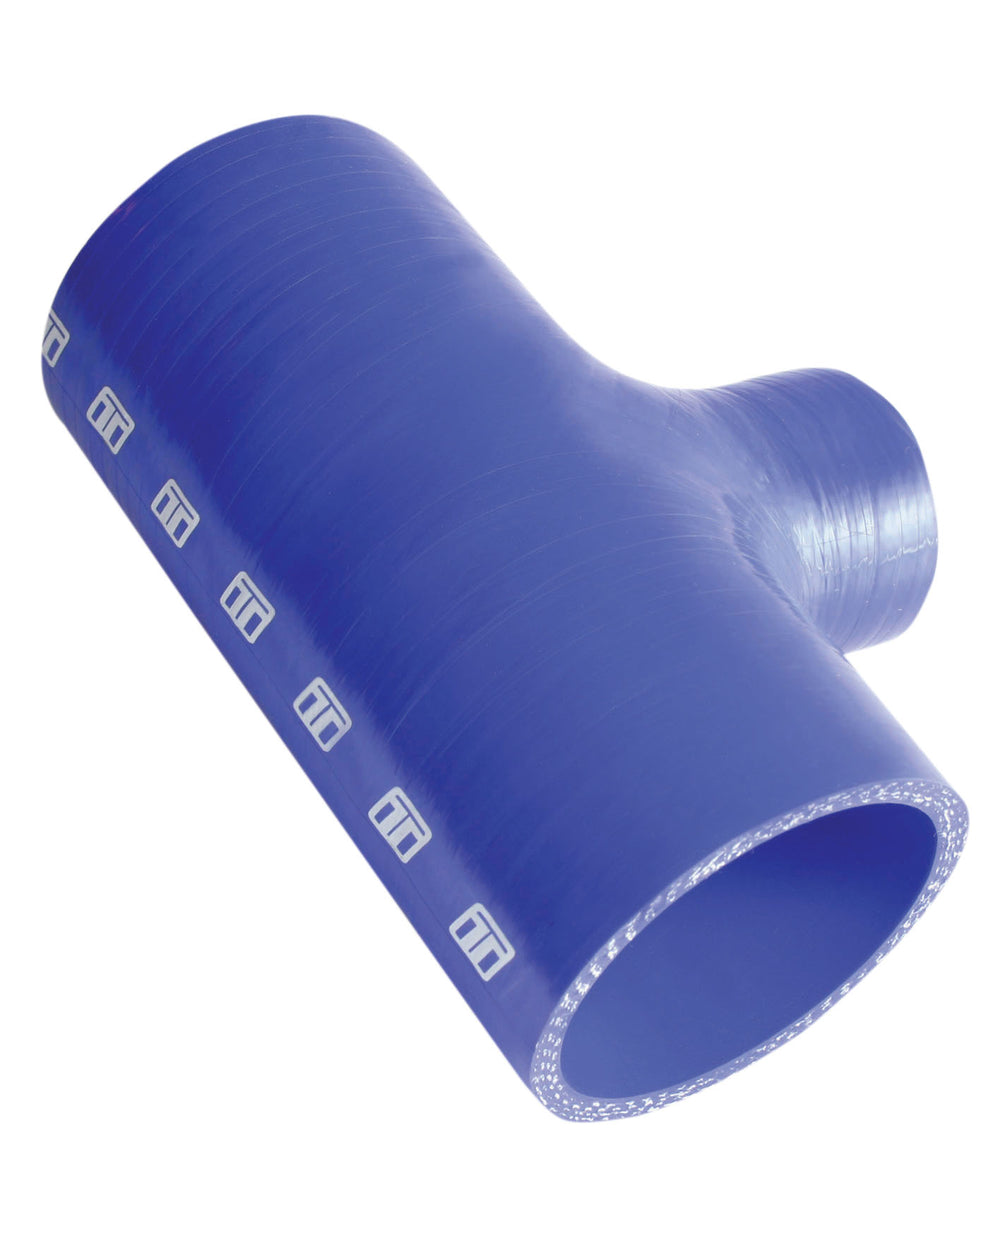 Turbosmart Intercooler Hose Kit (Hose Tee 2.50" ID 1.00" spout - Blue)